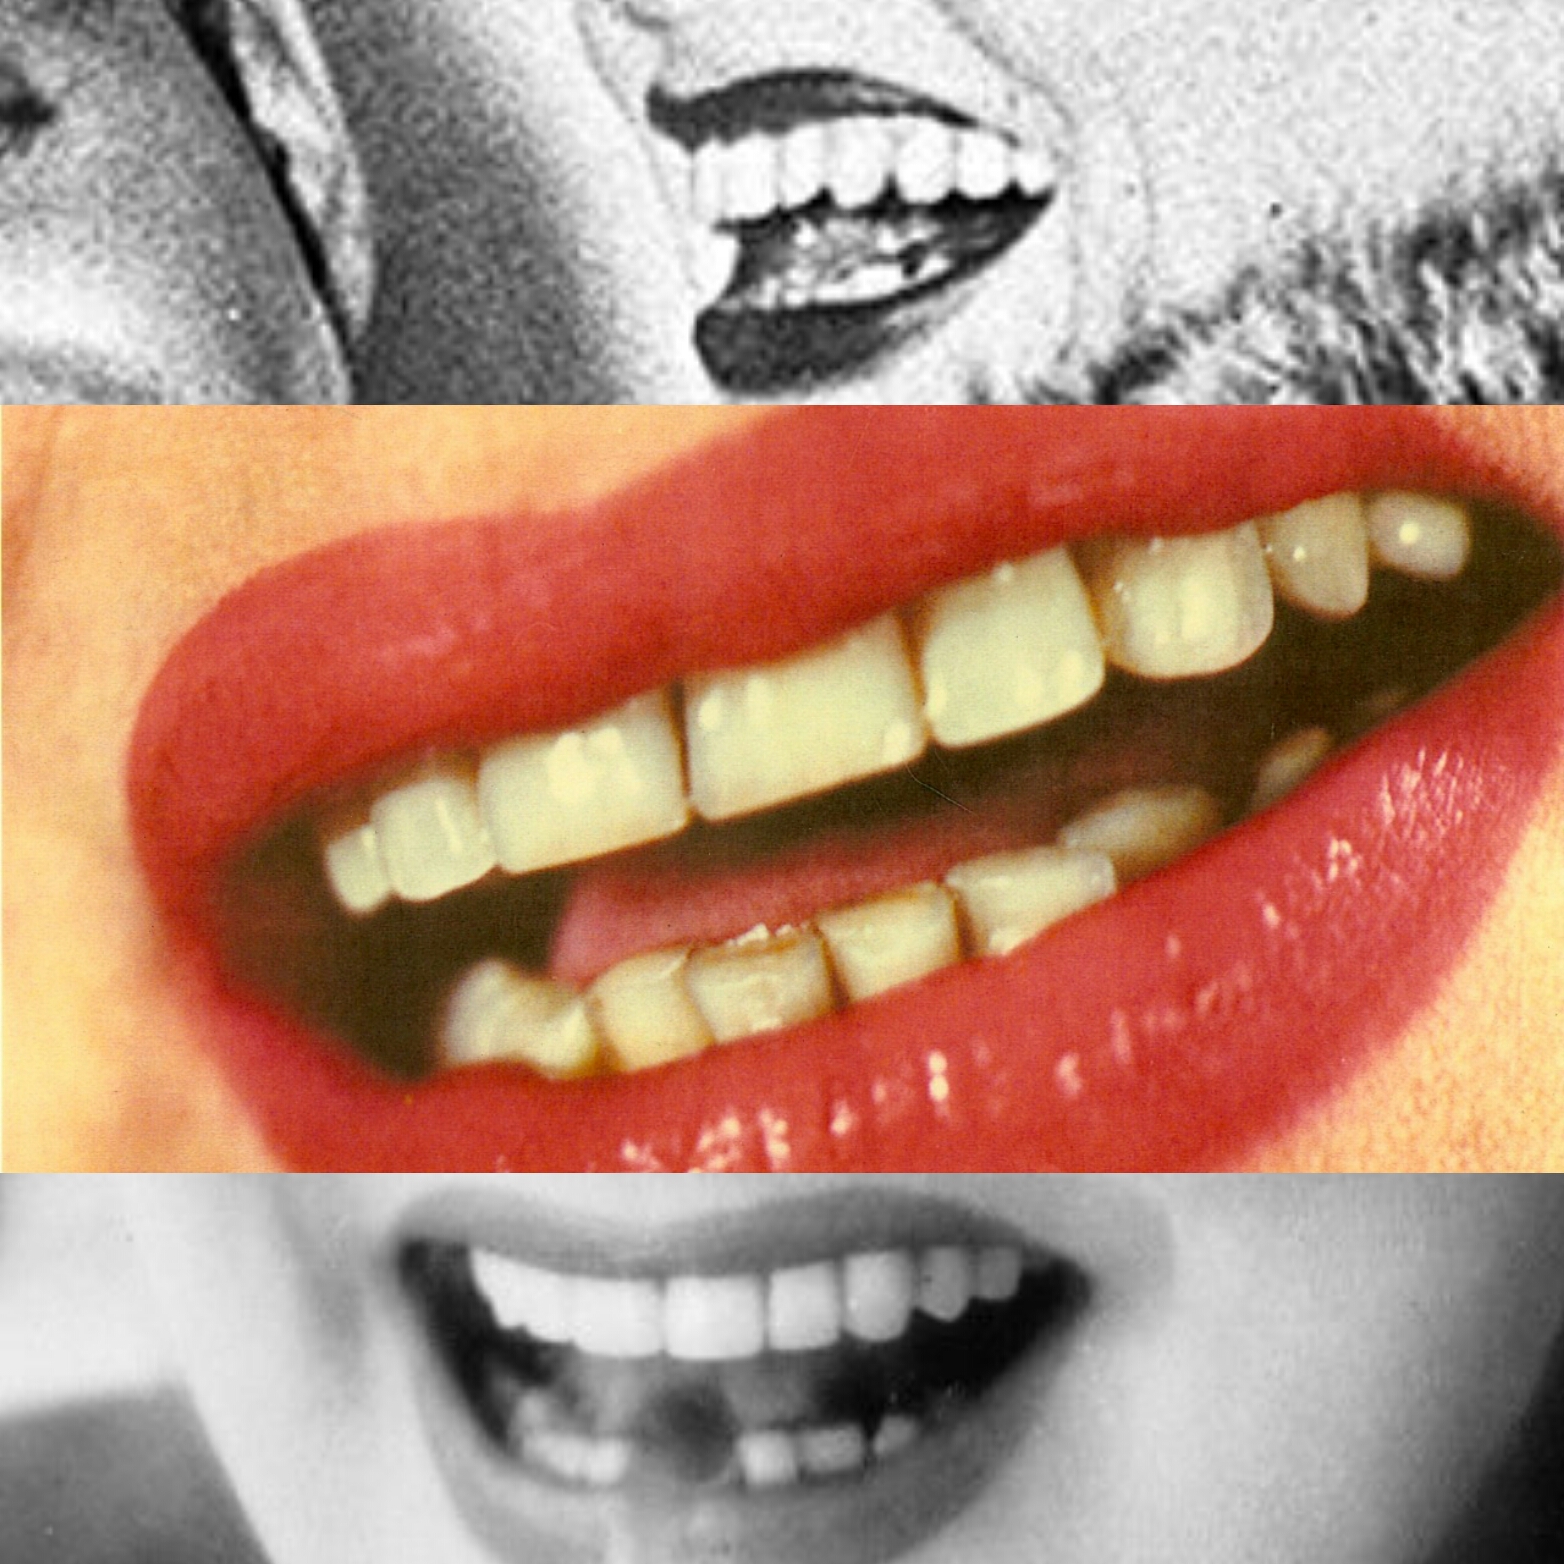 teeth5.jpg